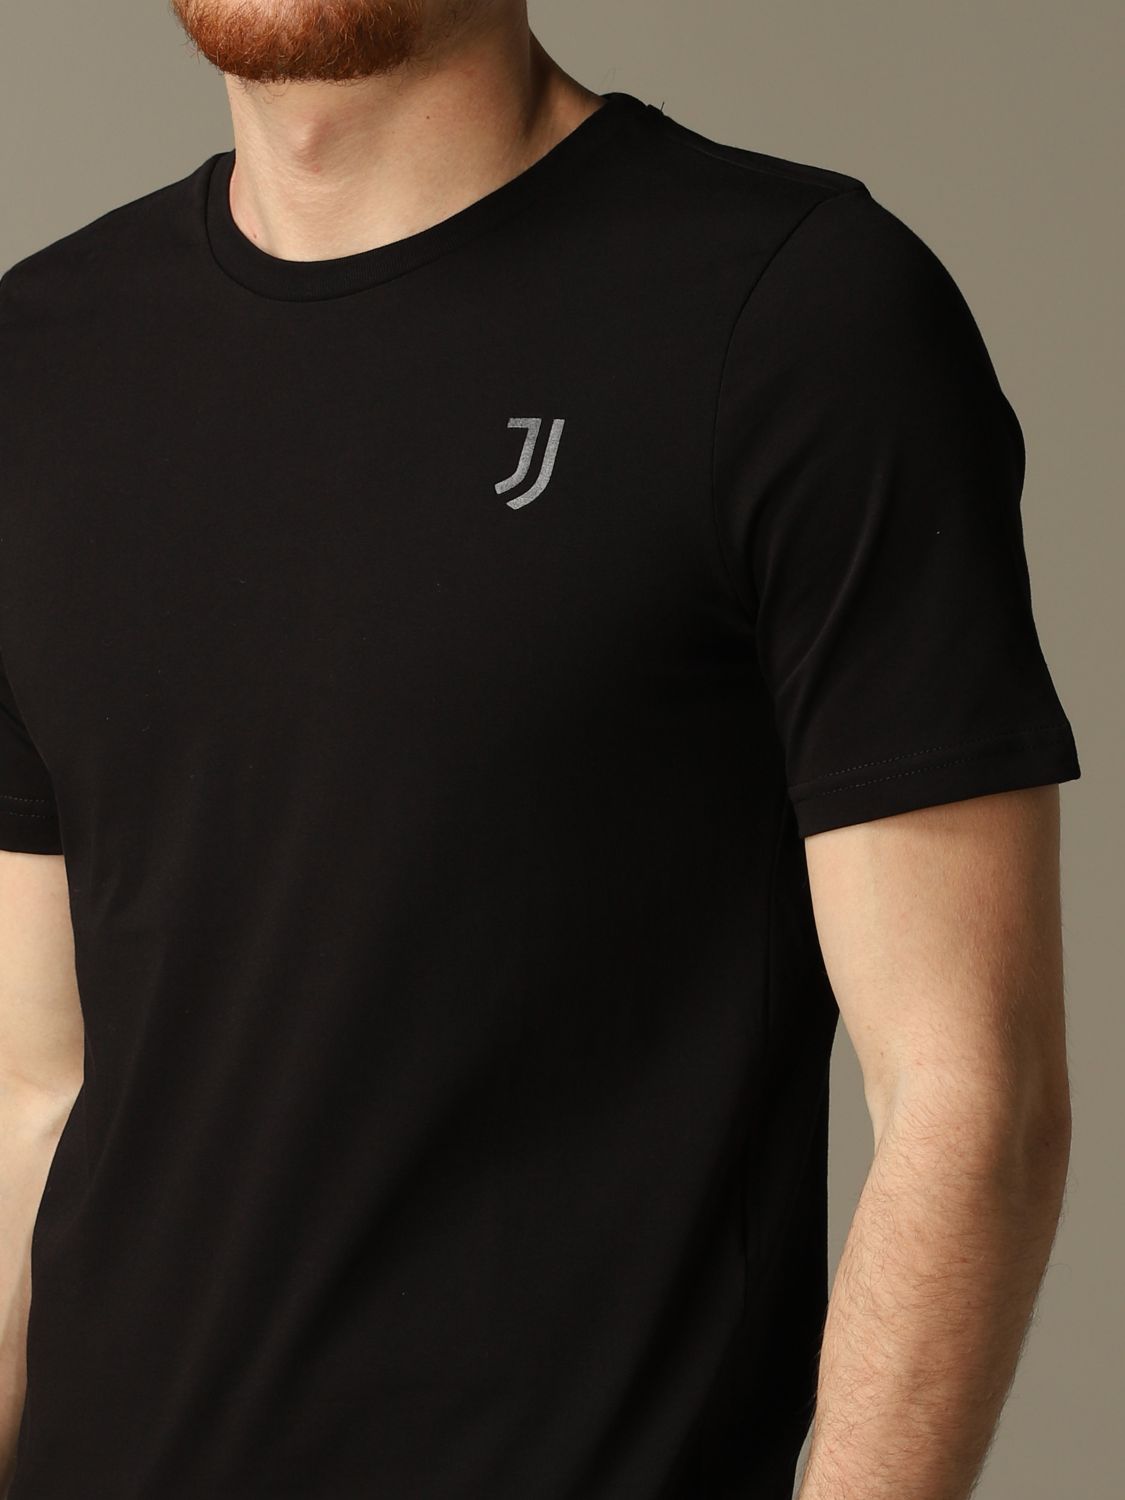 T-shirt Juventus Premium: Juventus Premium t-shirt for men black 3